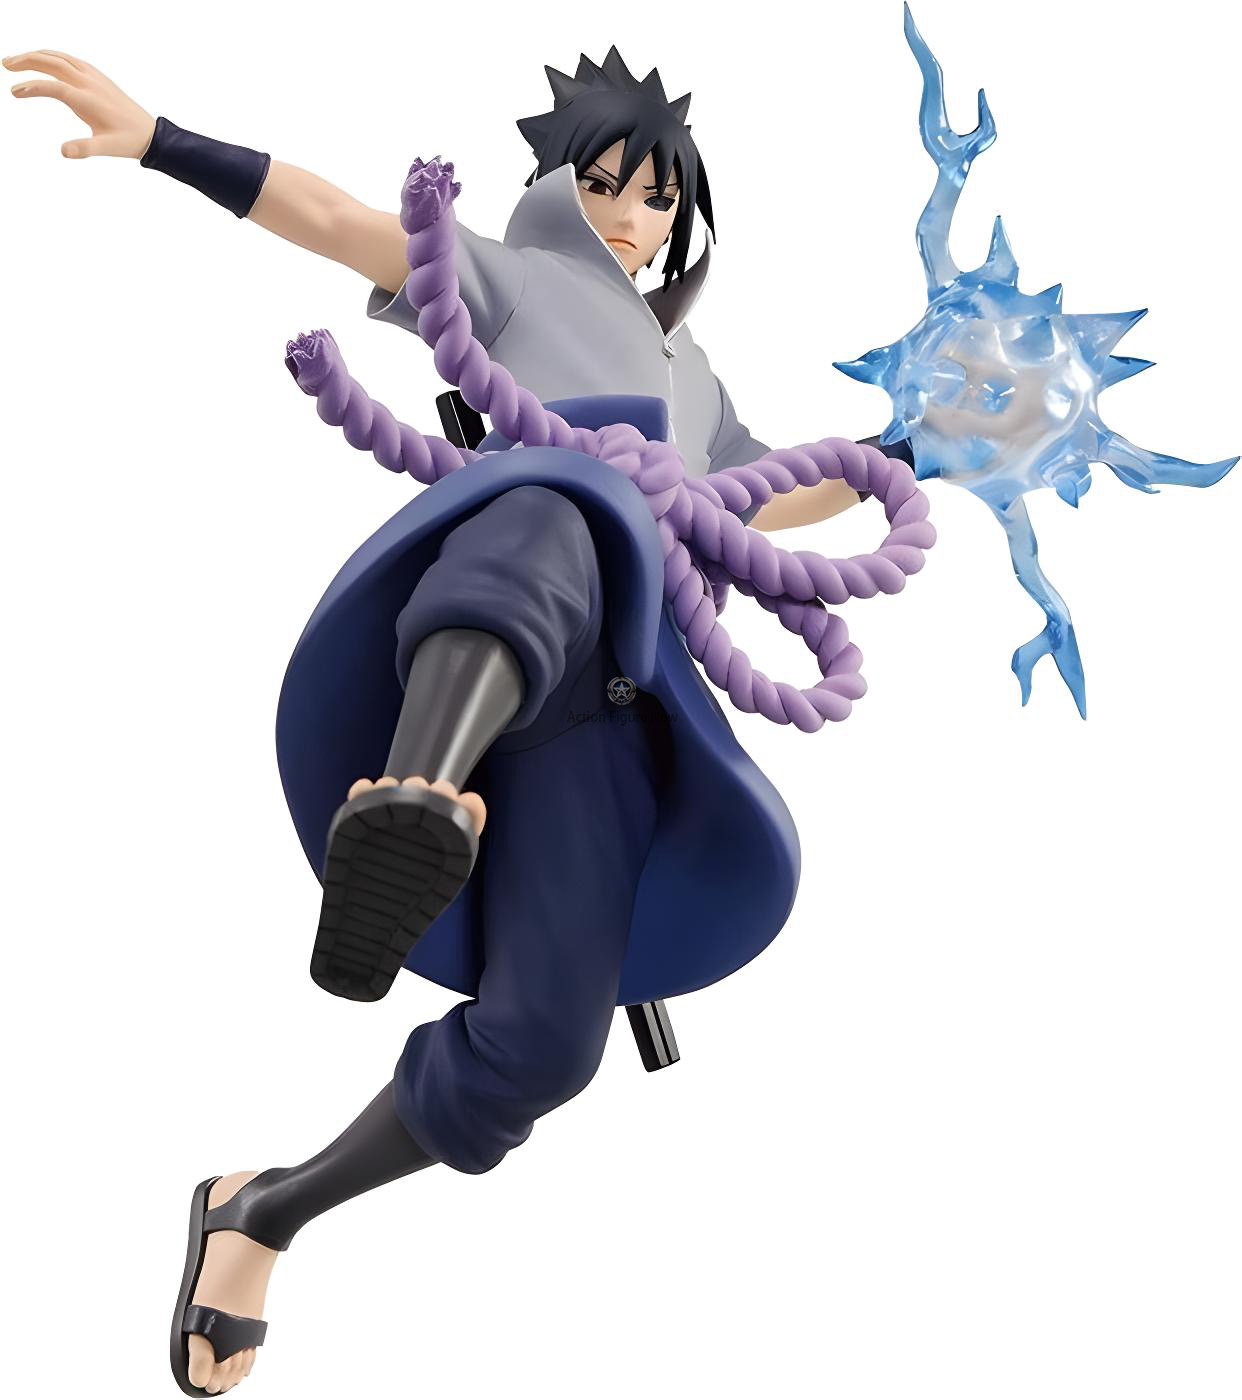 Sasuke Uchiha Naruto SH Figuarts Figure